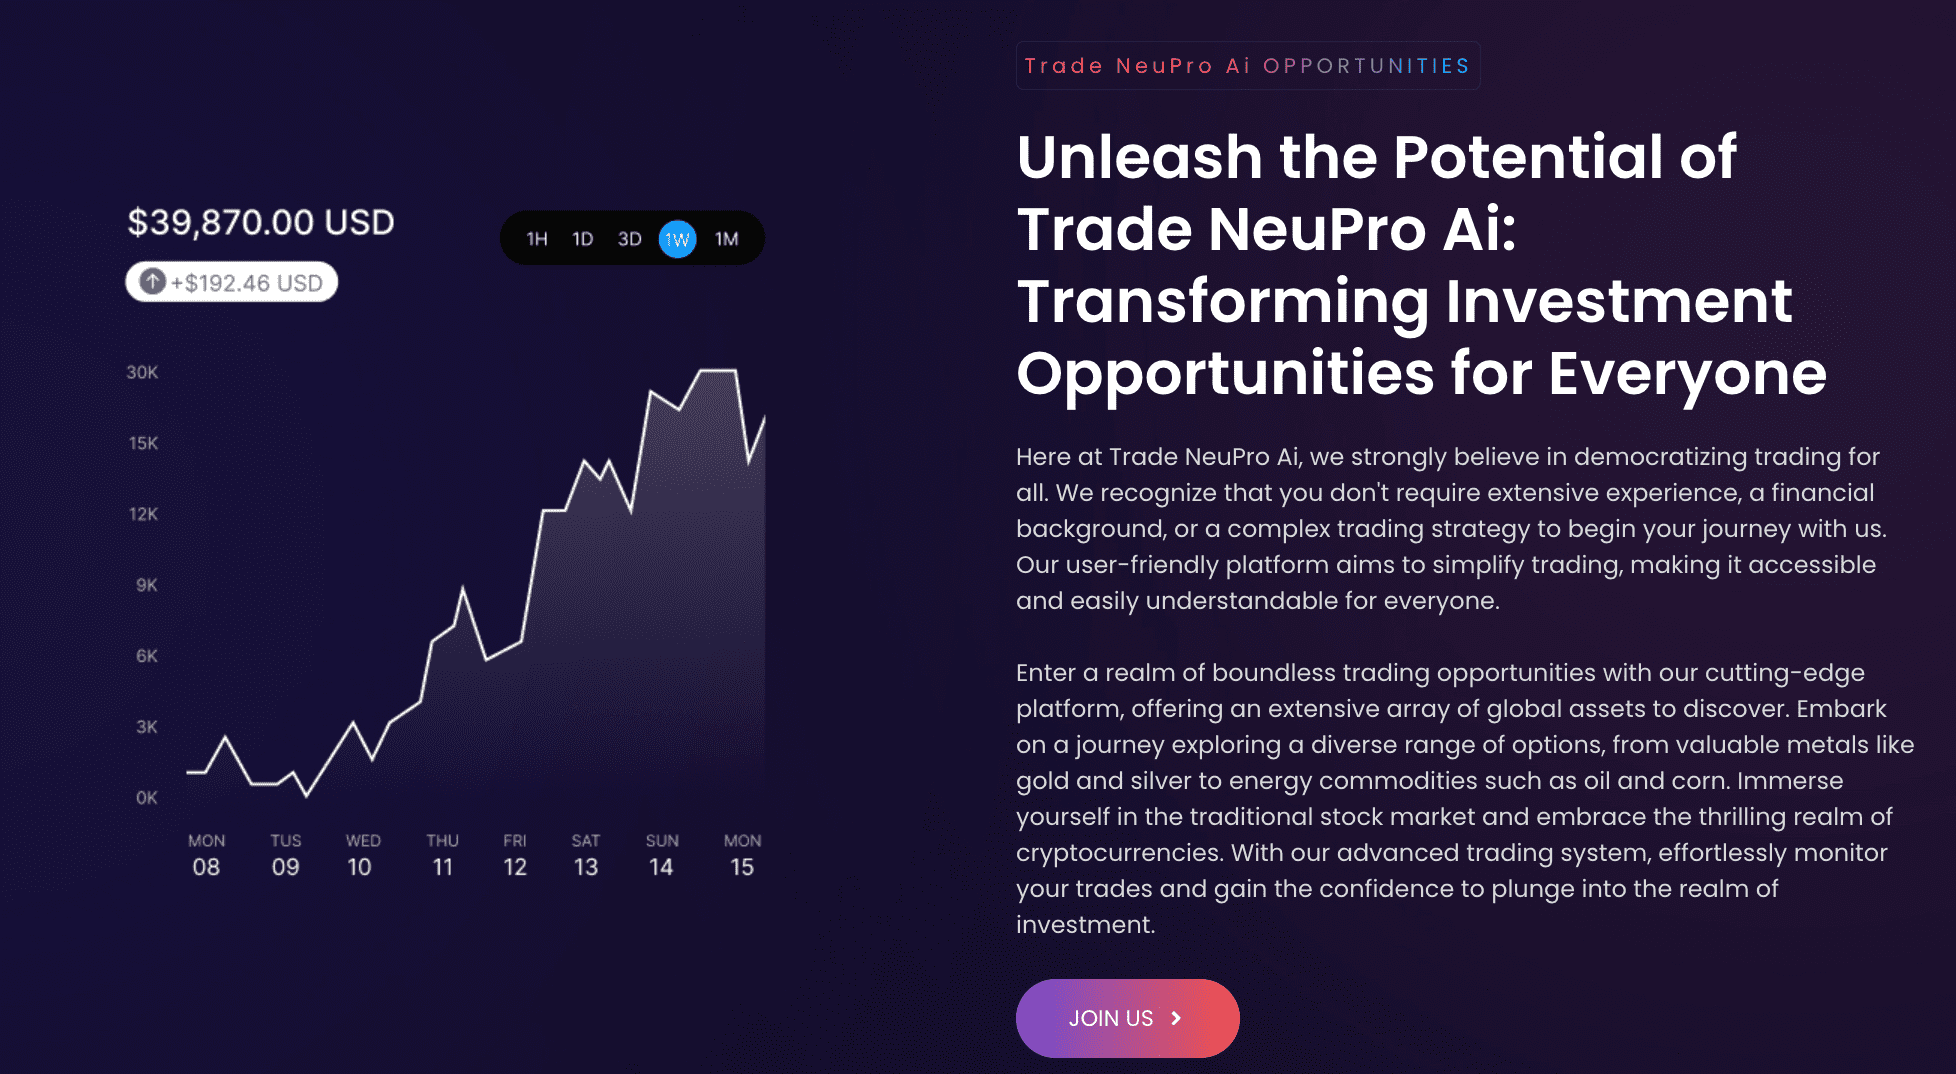 Trade NeuPro 4.0 (V 400) opportunities